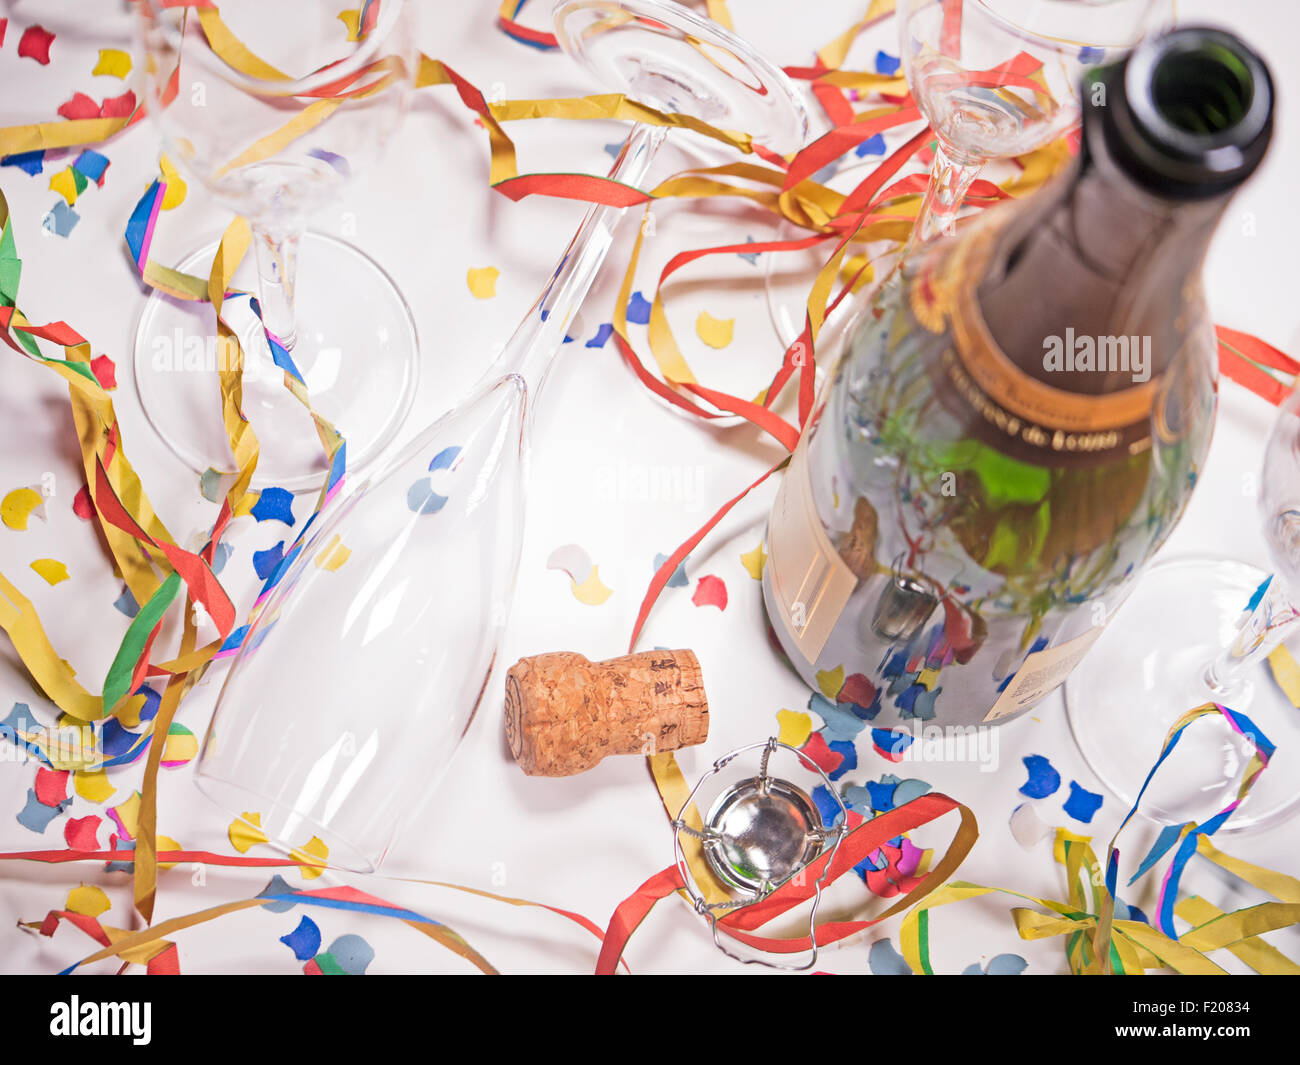 Offene Sektflasche und leere Gläser mit Papierschlangen und Konfetti Stock Photo